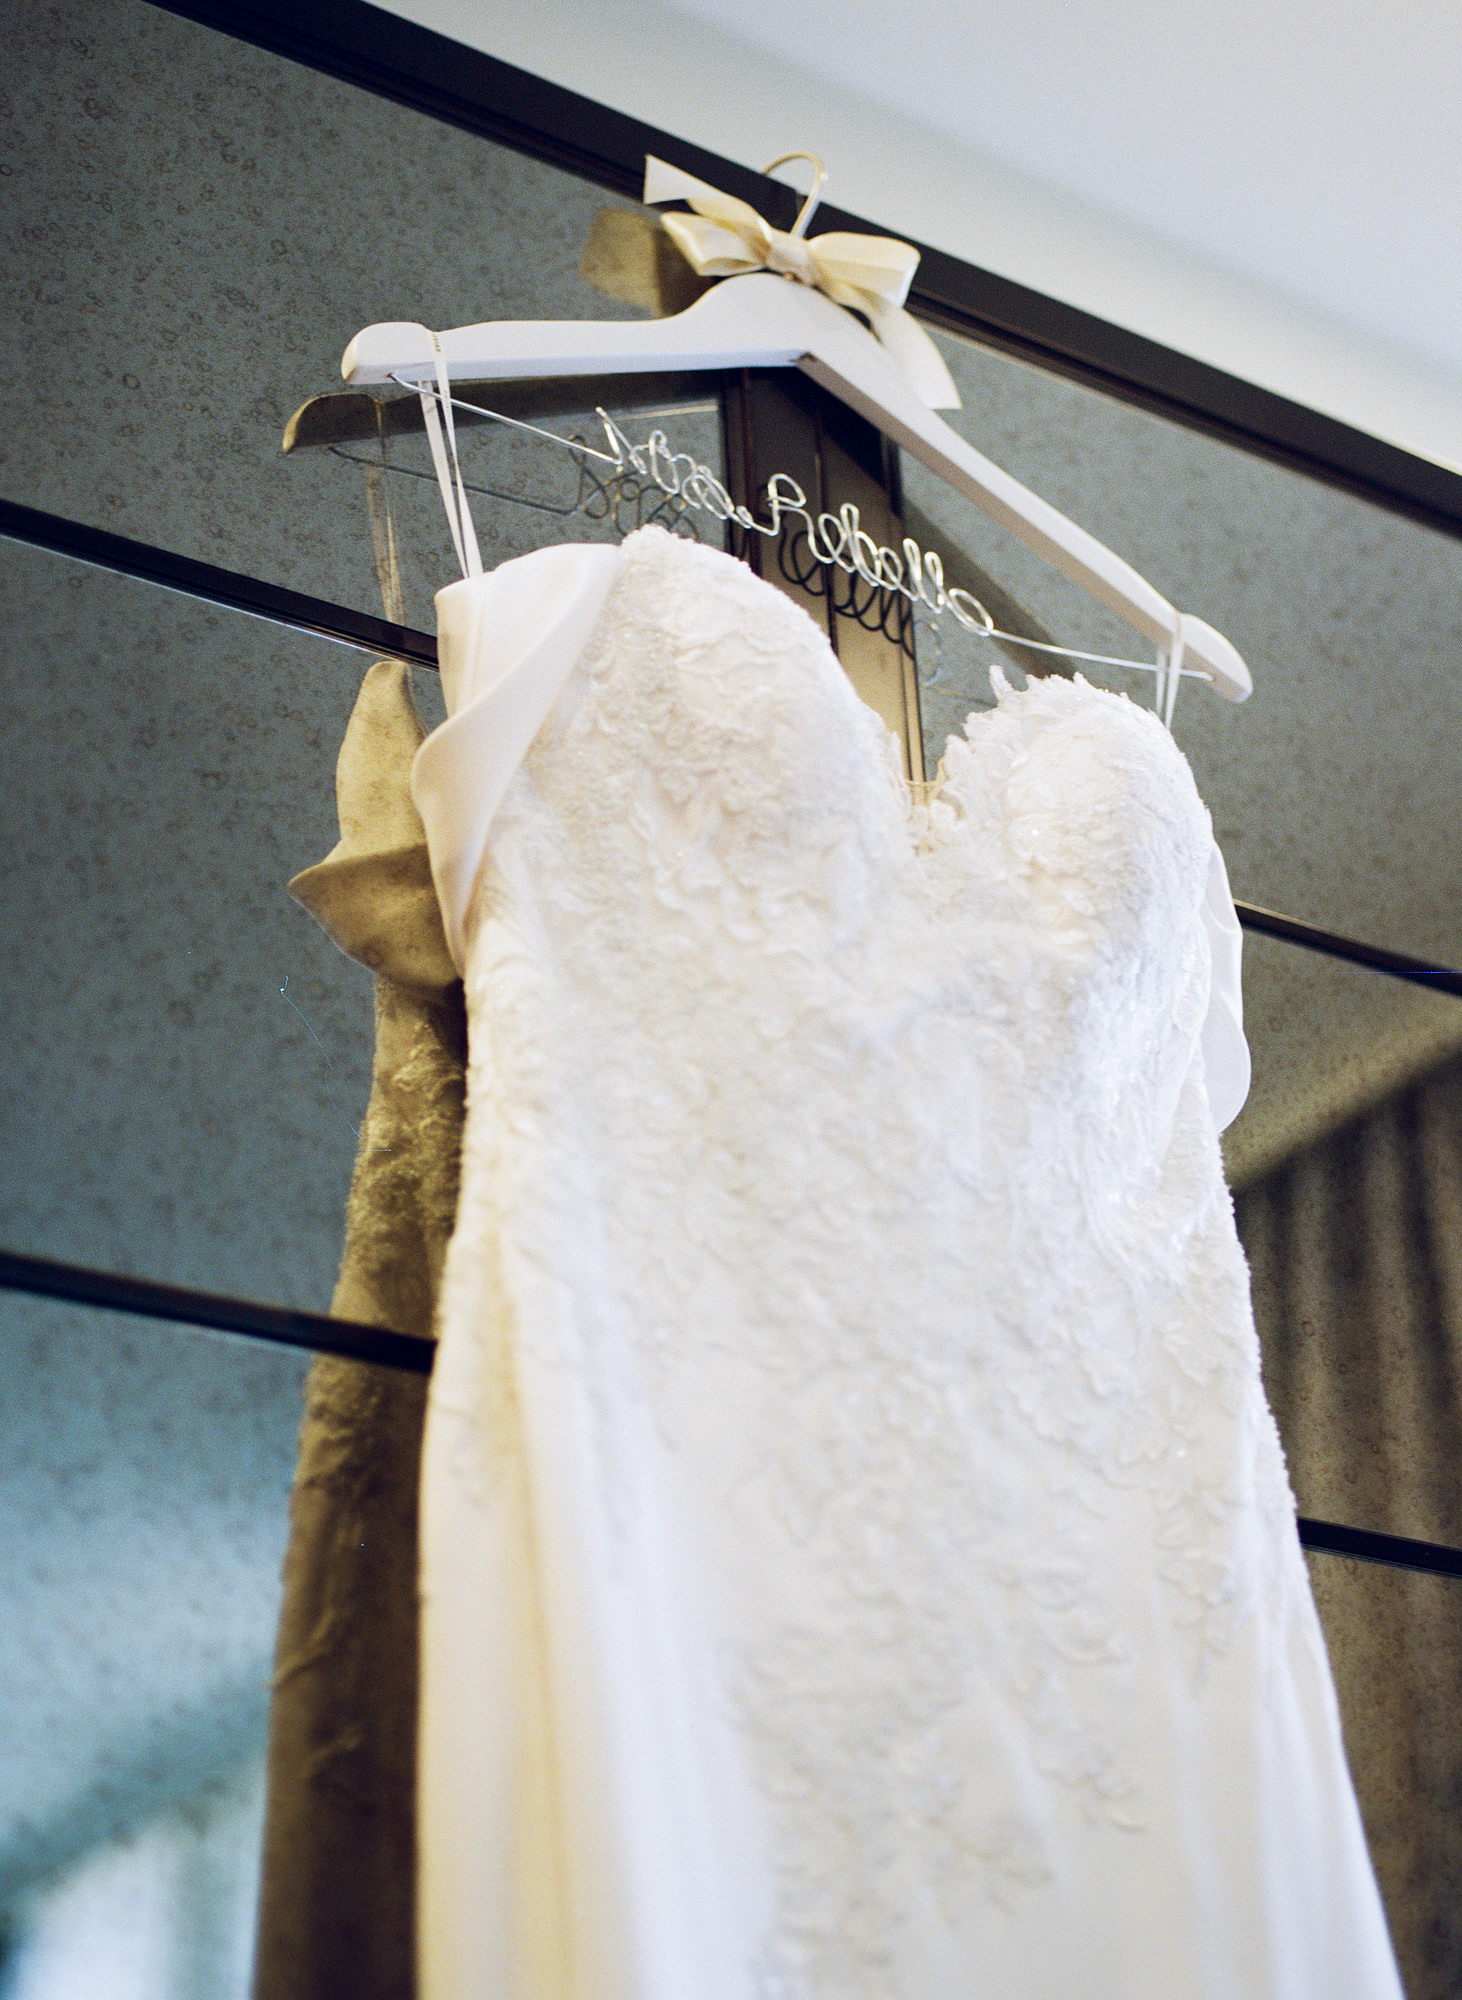 Wedding dress on hanger against mirrored closet door